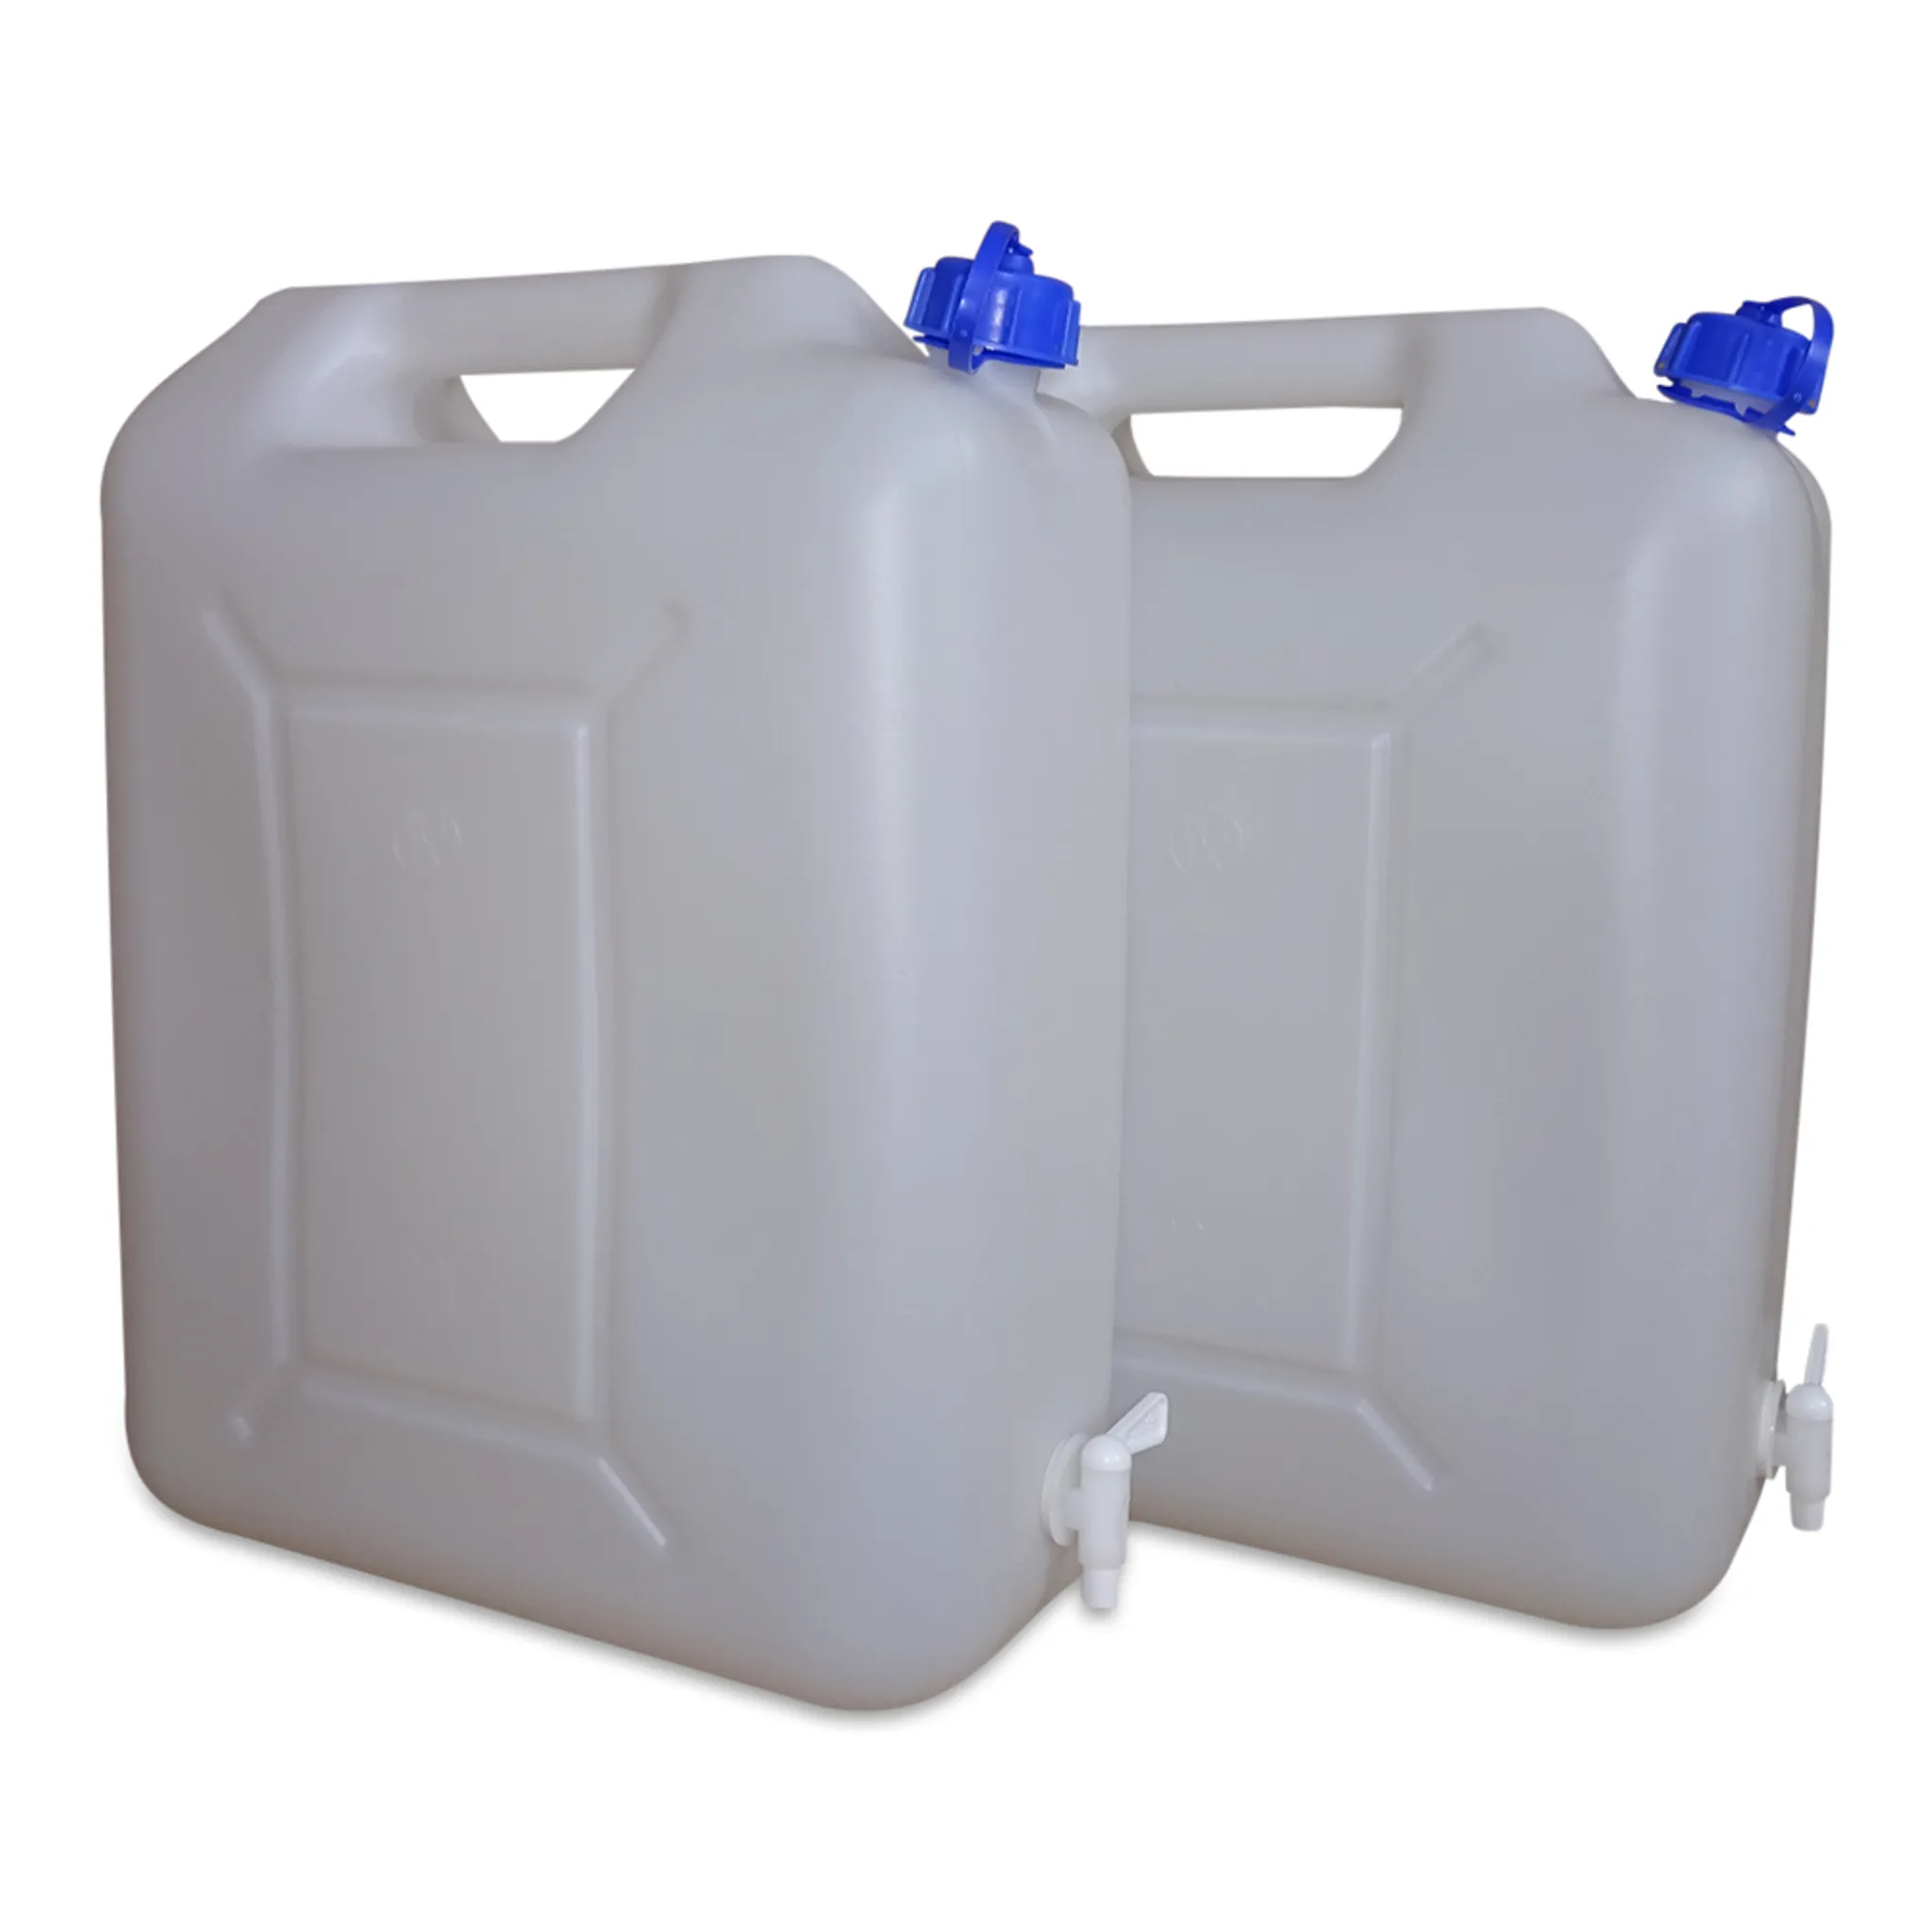 Trinkwasserkanister 20 Liter mit Ablasshahn - Kanister - Wasserversorgung -  Wasser/Sanitär